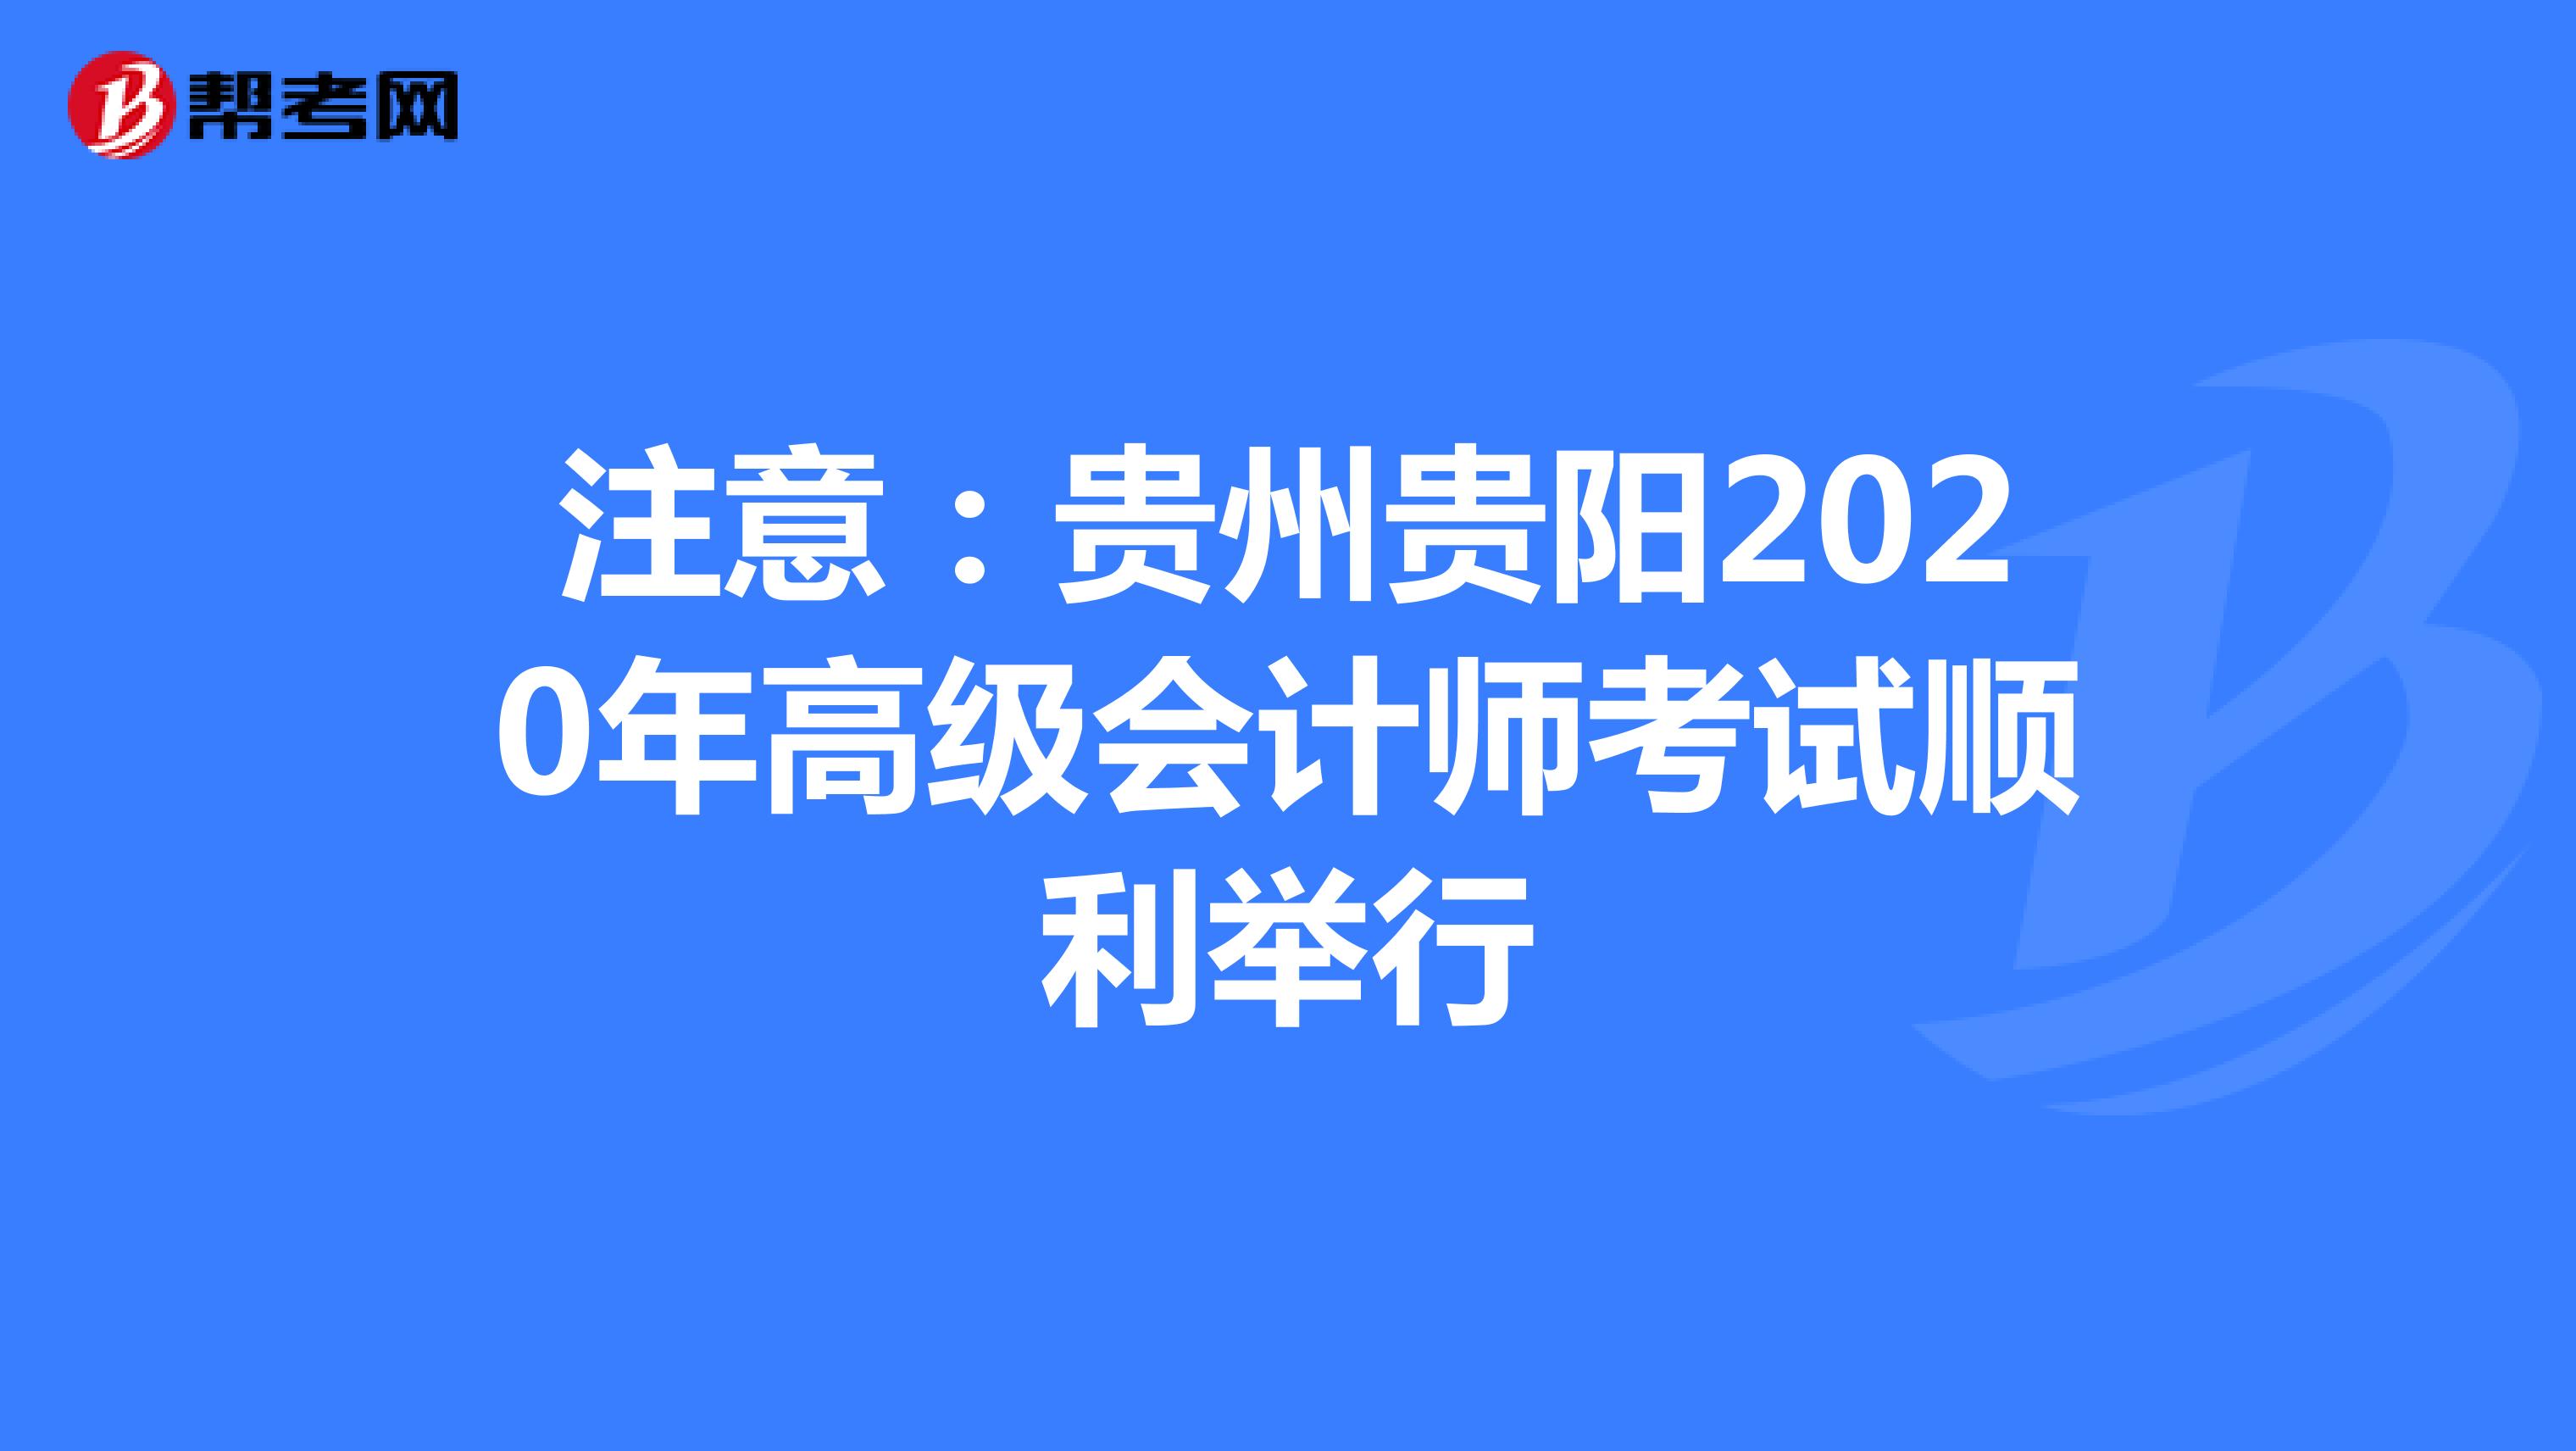 注意：贵州贵阳2020年高级会计师考试顺利举行